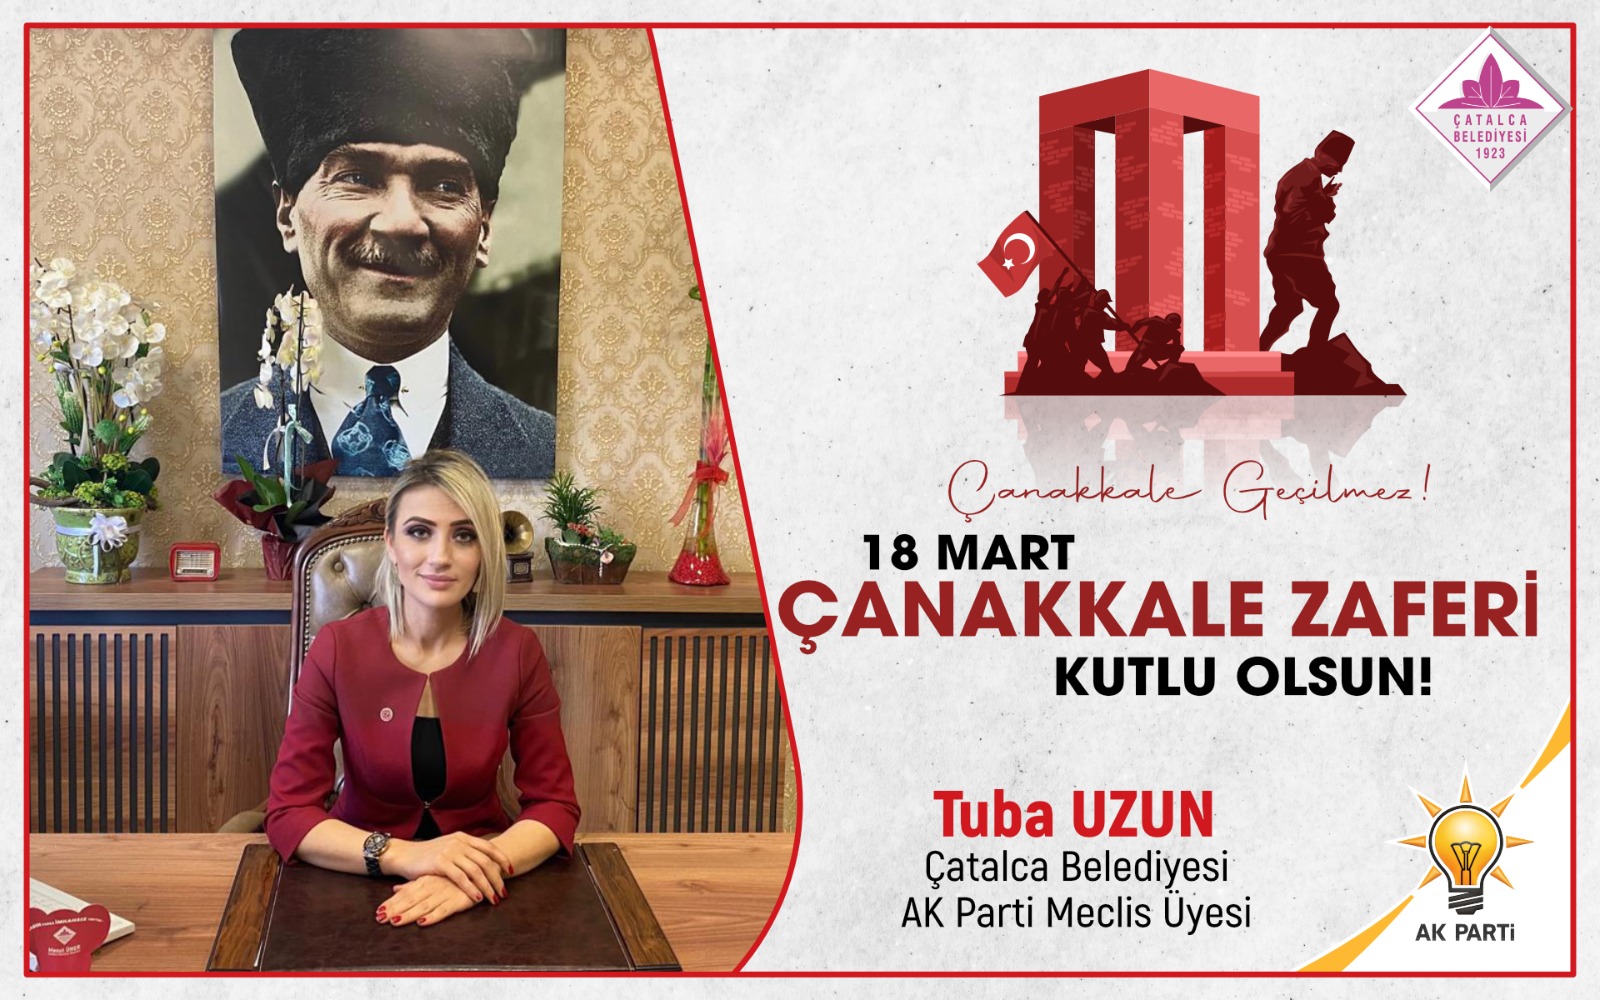 Çatalca Belediyesi AK Parti Meclis üyesi Tuba Uzun’dan Kutlama ve Anma mesajı